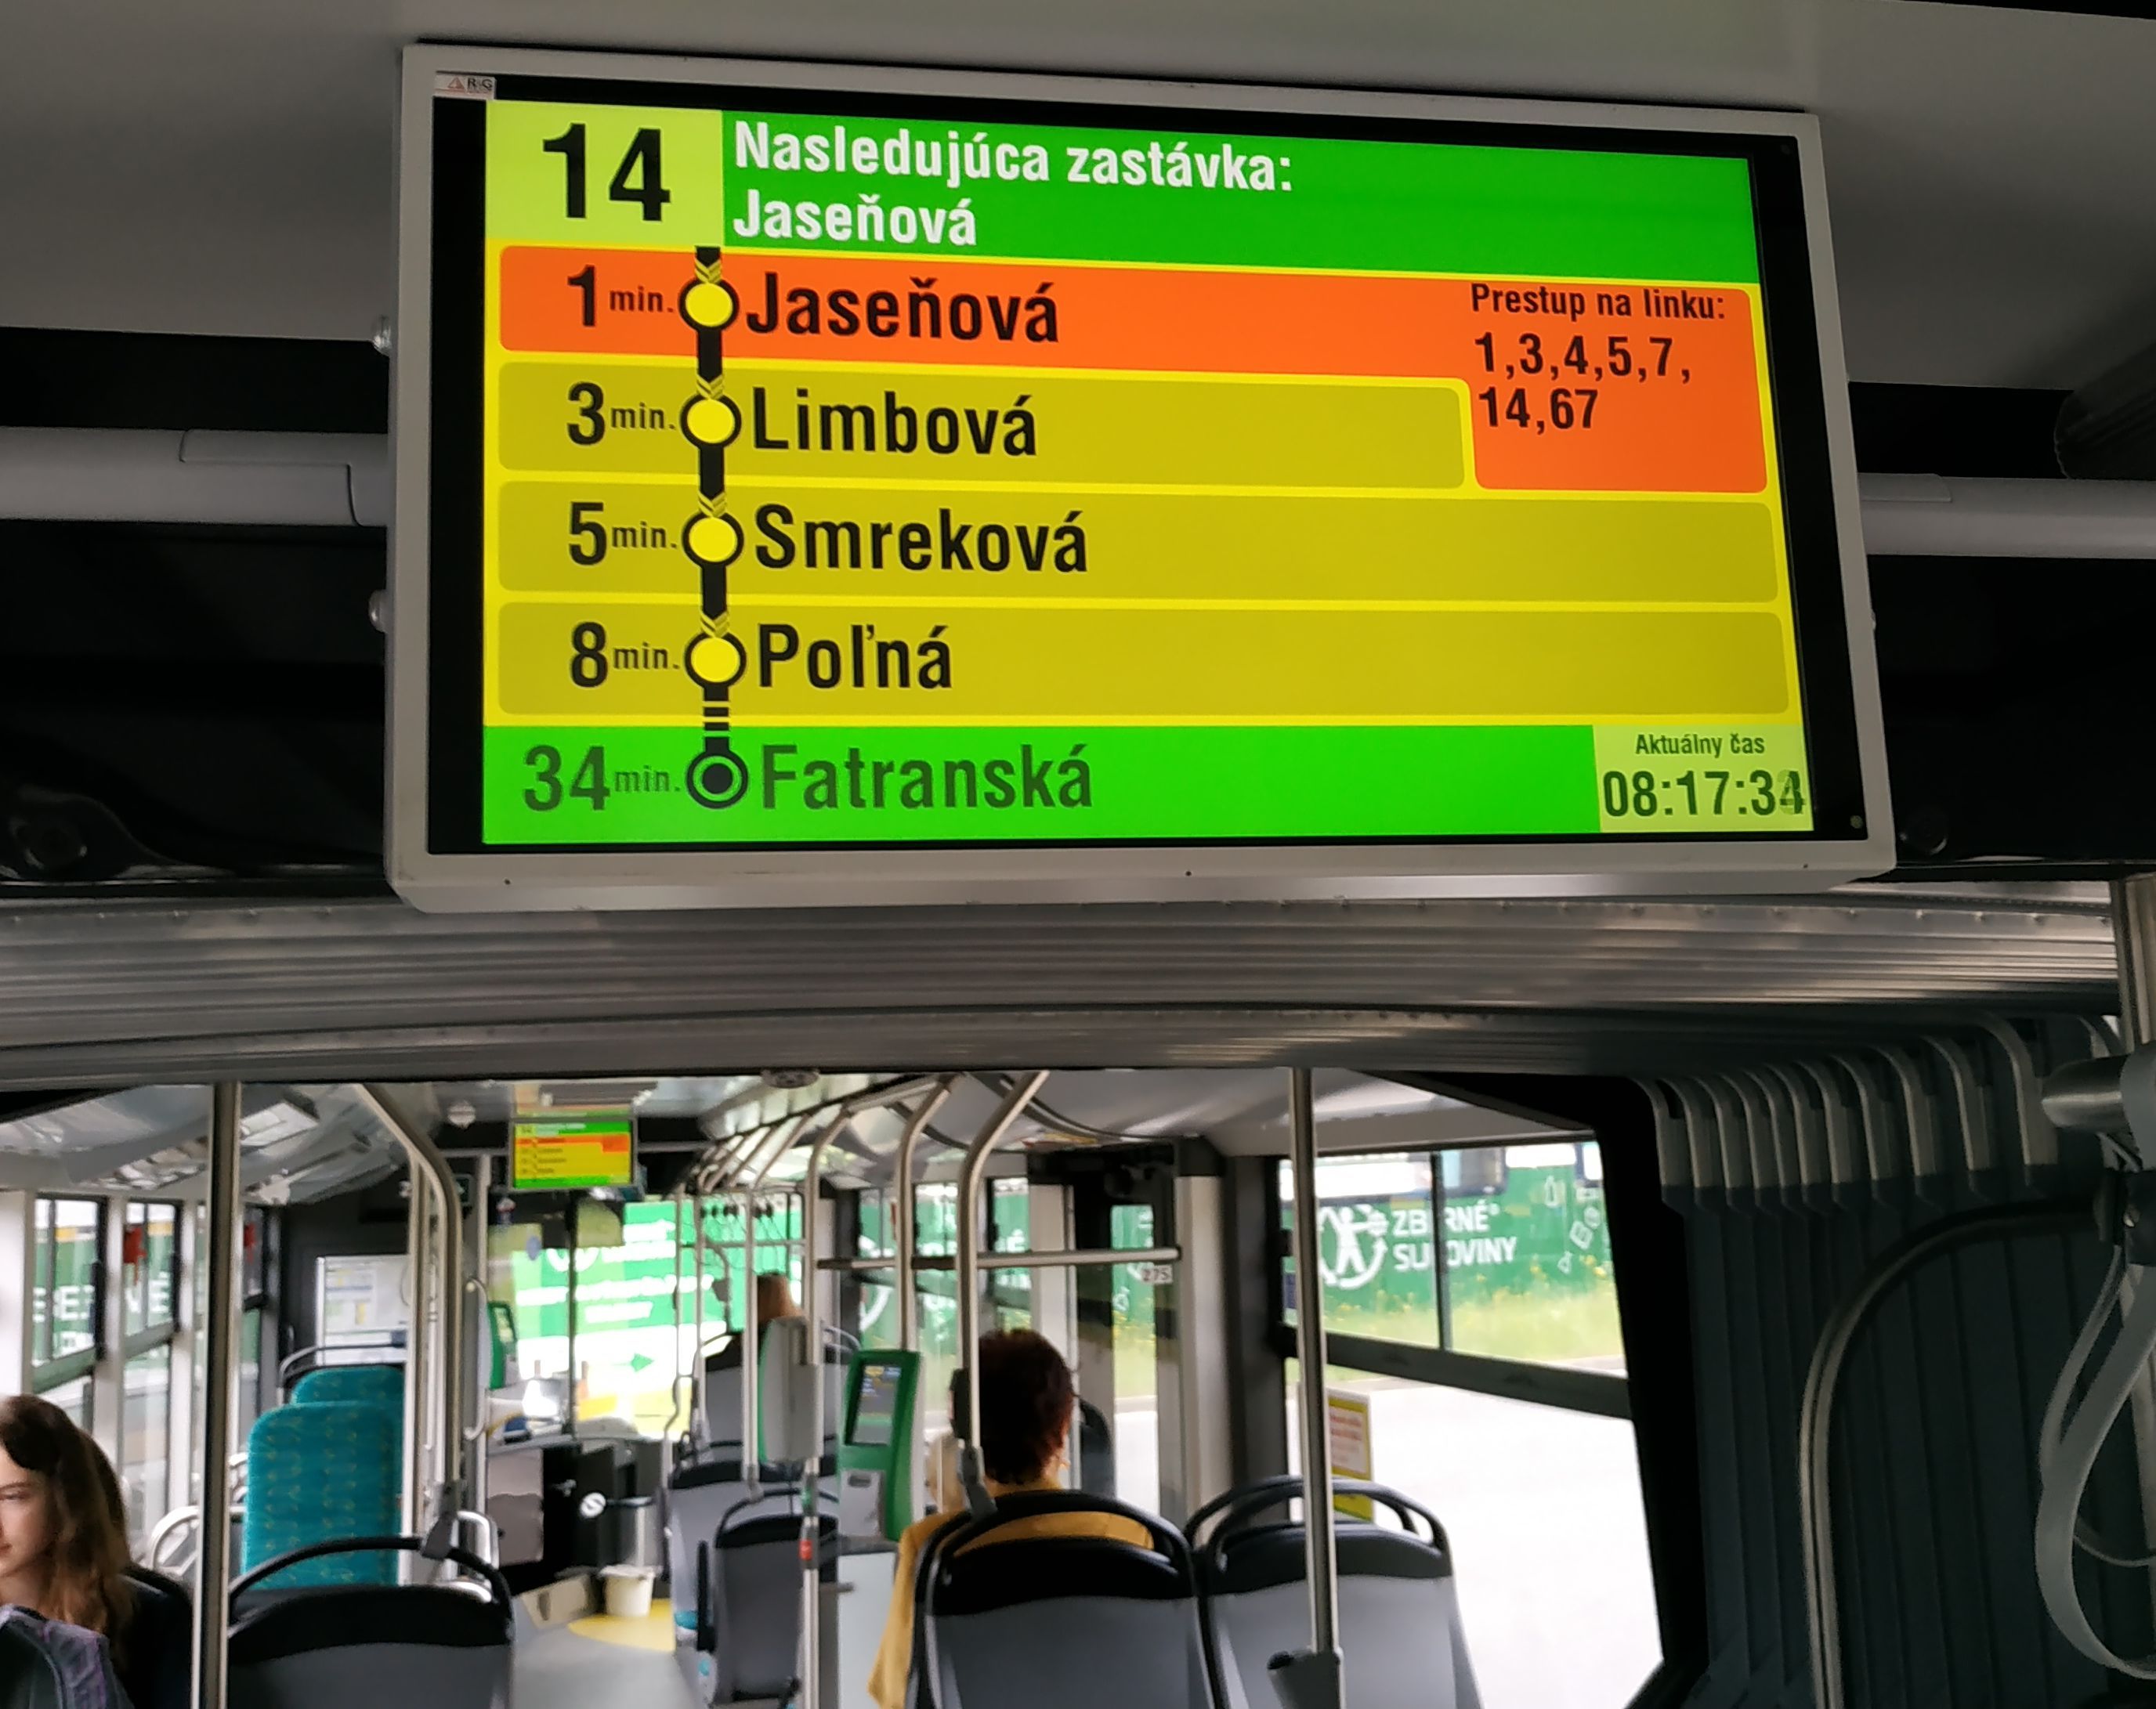 Informaèní obrazovky v nových vozidlech MHD ukazují kromì aktuální trasy a možností pøestupù v pøíští zastávce také jízdní dobu do jednotlivých zastávek. Žilina vybavila také všechny zdejší semafory preferencí MHD.